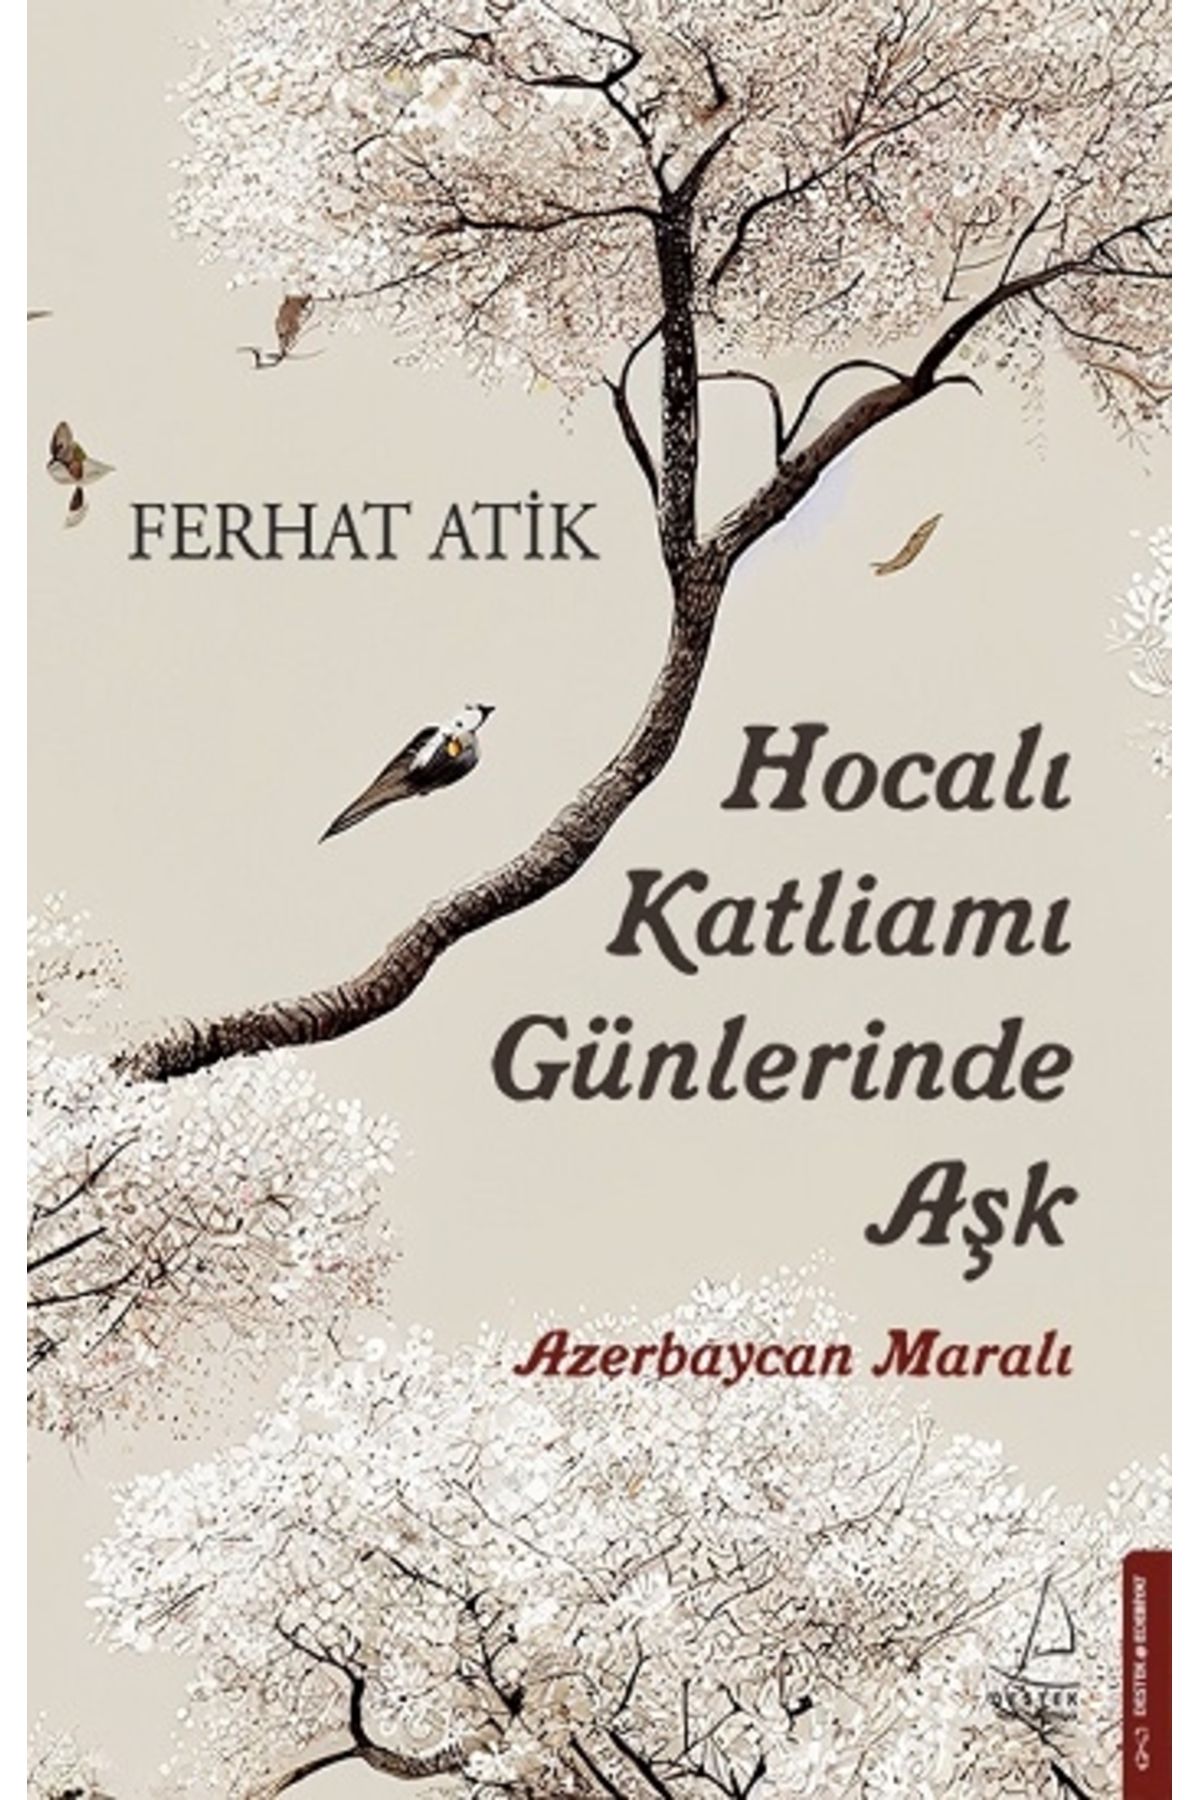 Destek Yayınları Hocalı Katliamı Günlerinde Aşk